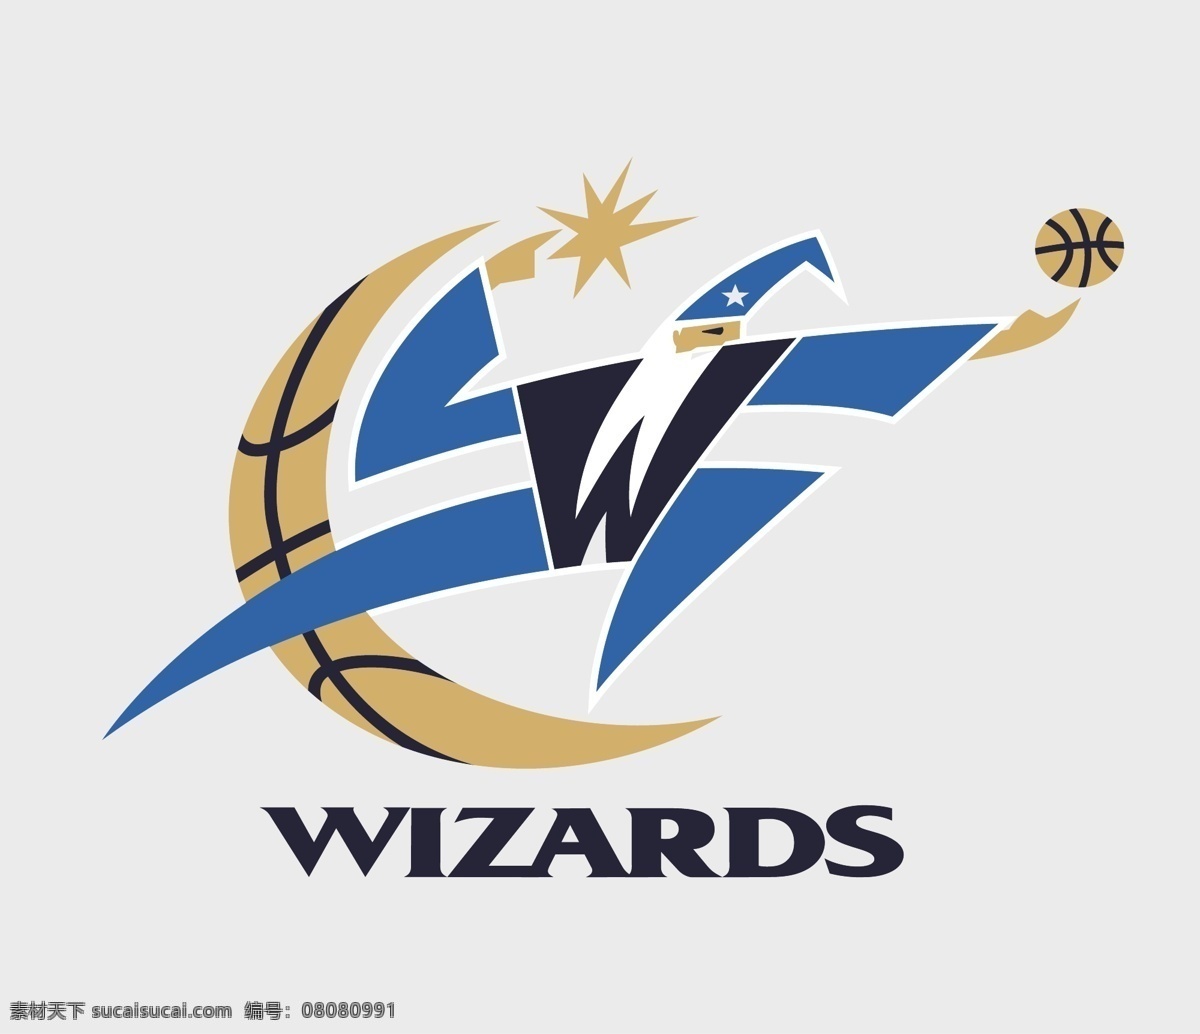 wizards 标志 篮球 模板 球队标志 设计稿 素材元素 源文件 washington 华盛顿奇才队 矢量图